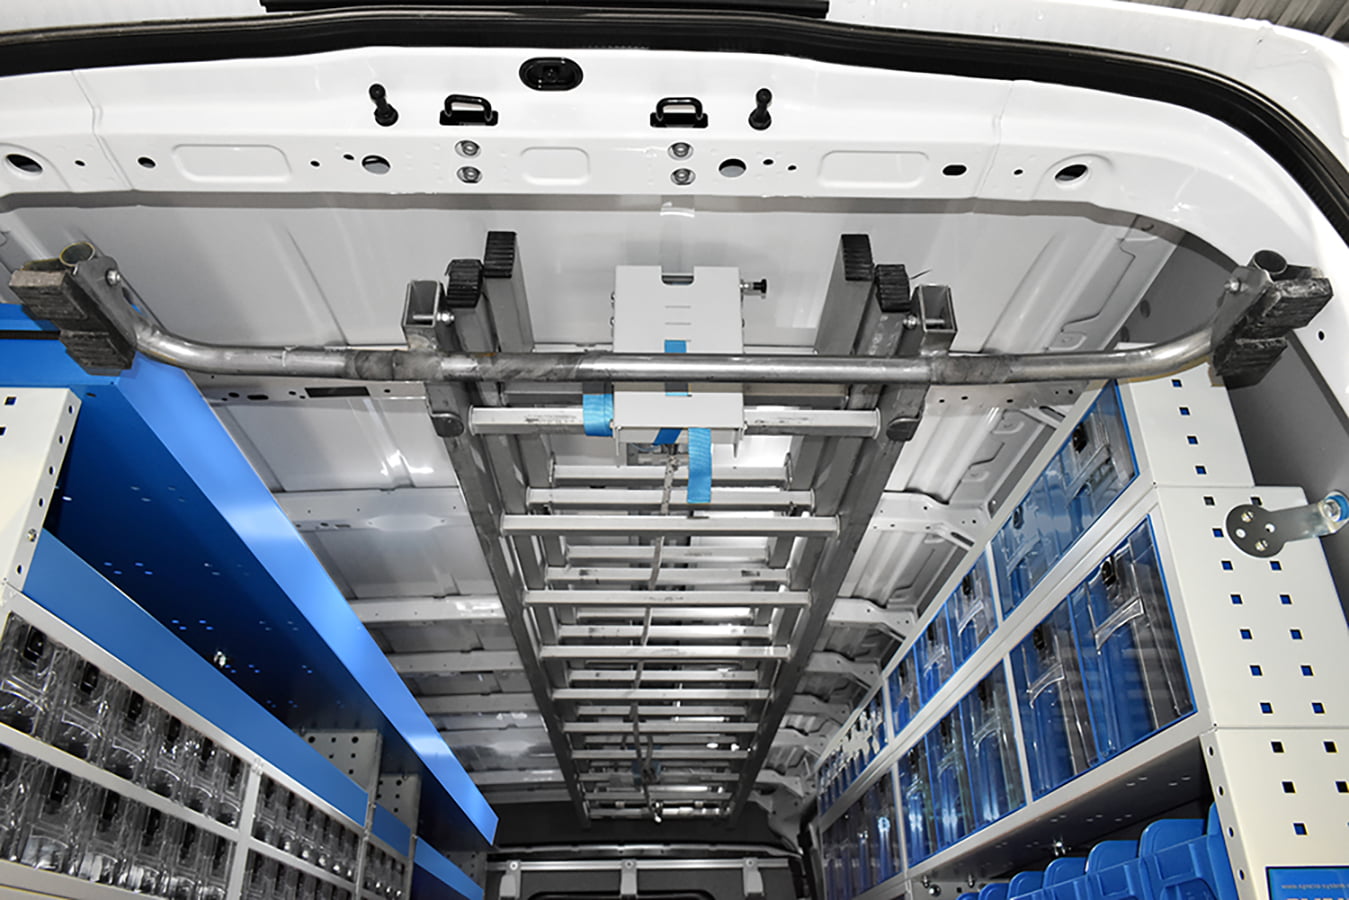 Soluzioni funzionali per furgoni portascala a soffitto da syncro system torino